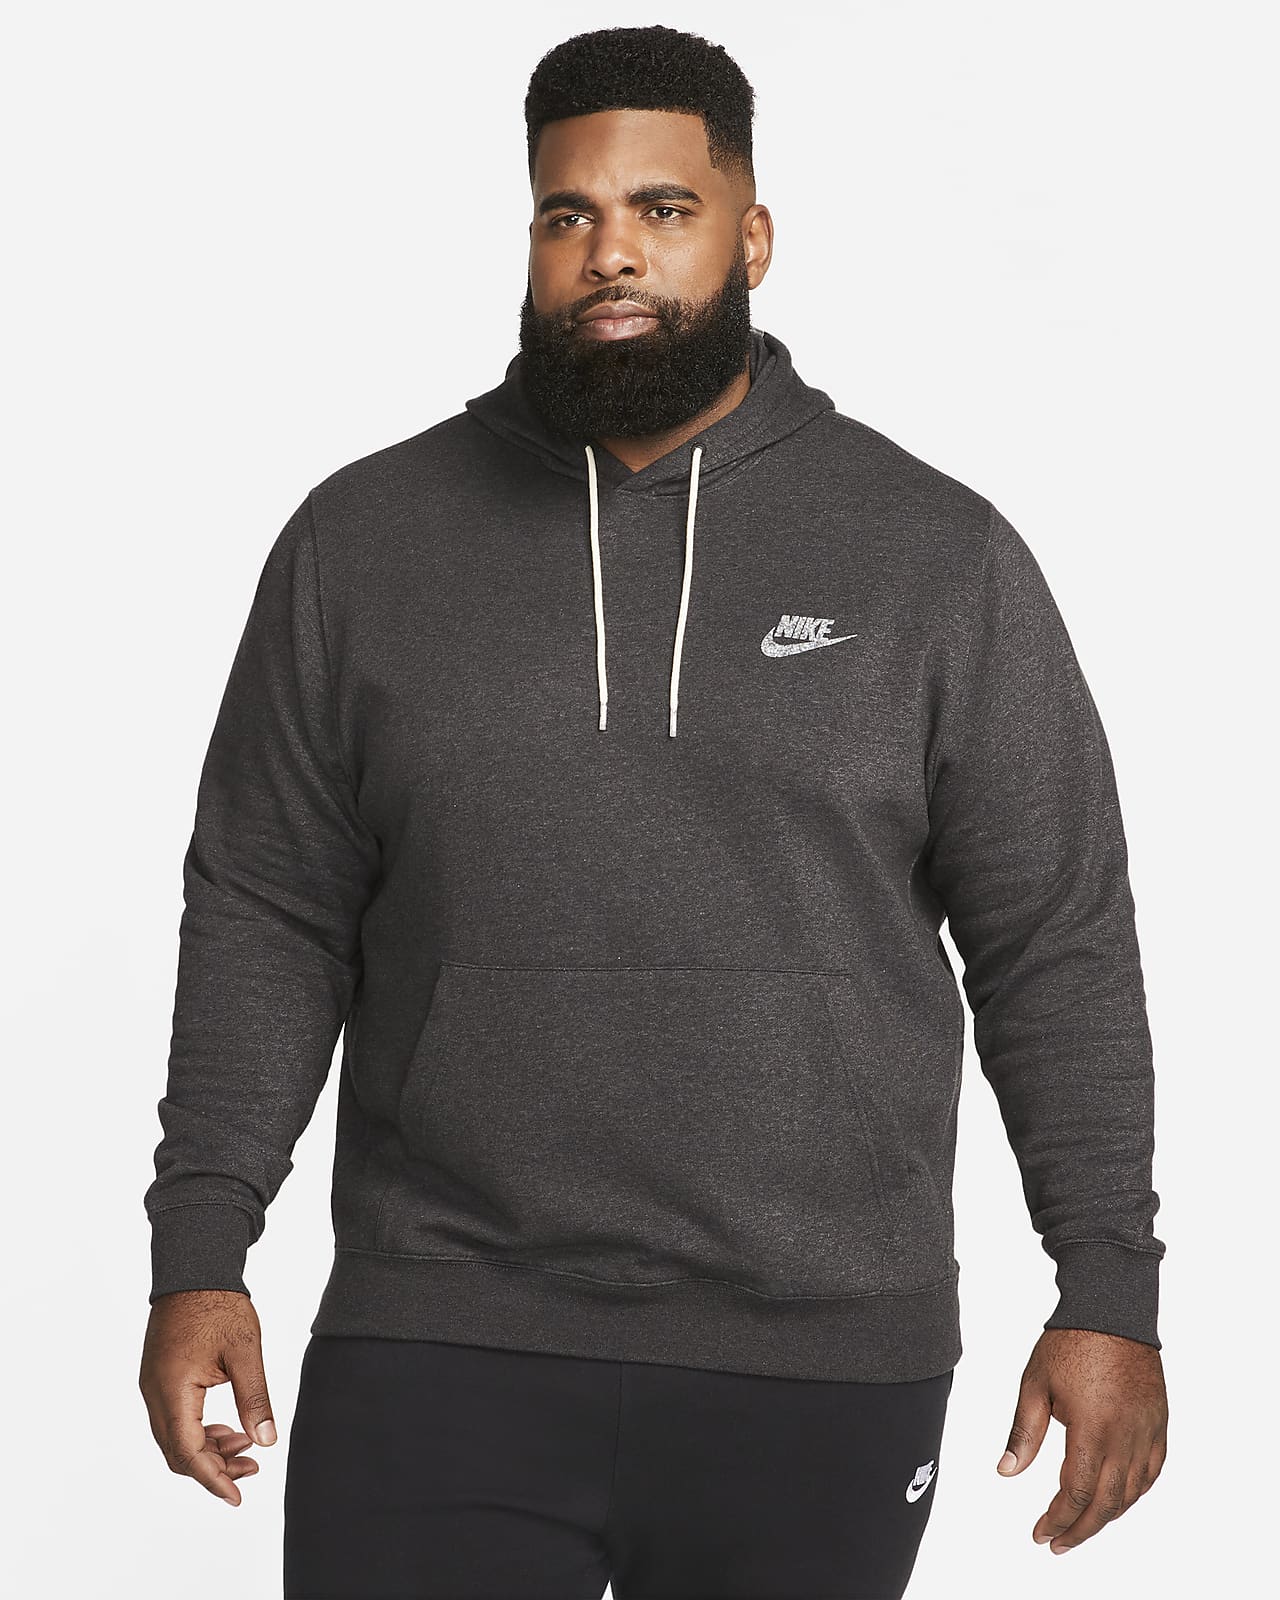 Miseria Revolucionario Contradecir Sudadera con gorro de tejido Fleece sin cierre para hombre Nike Sportswear.  Nike.com